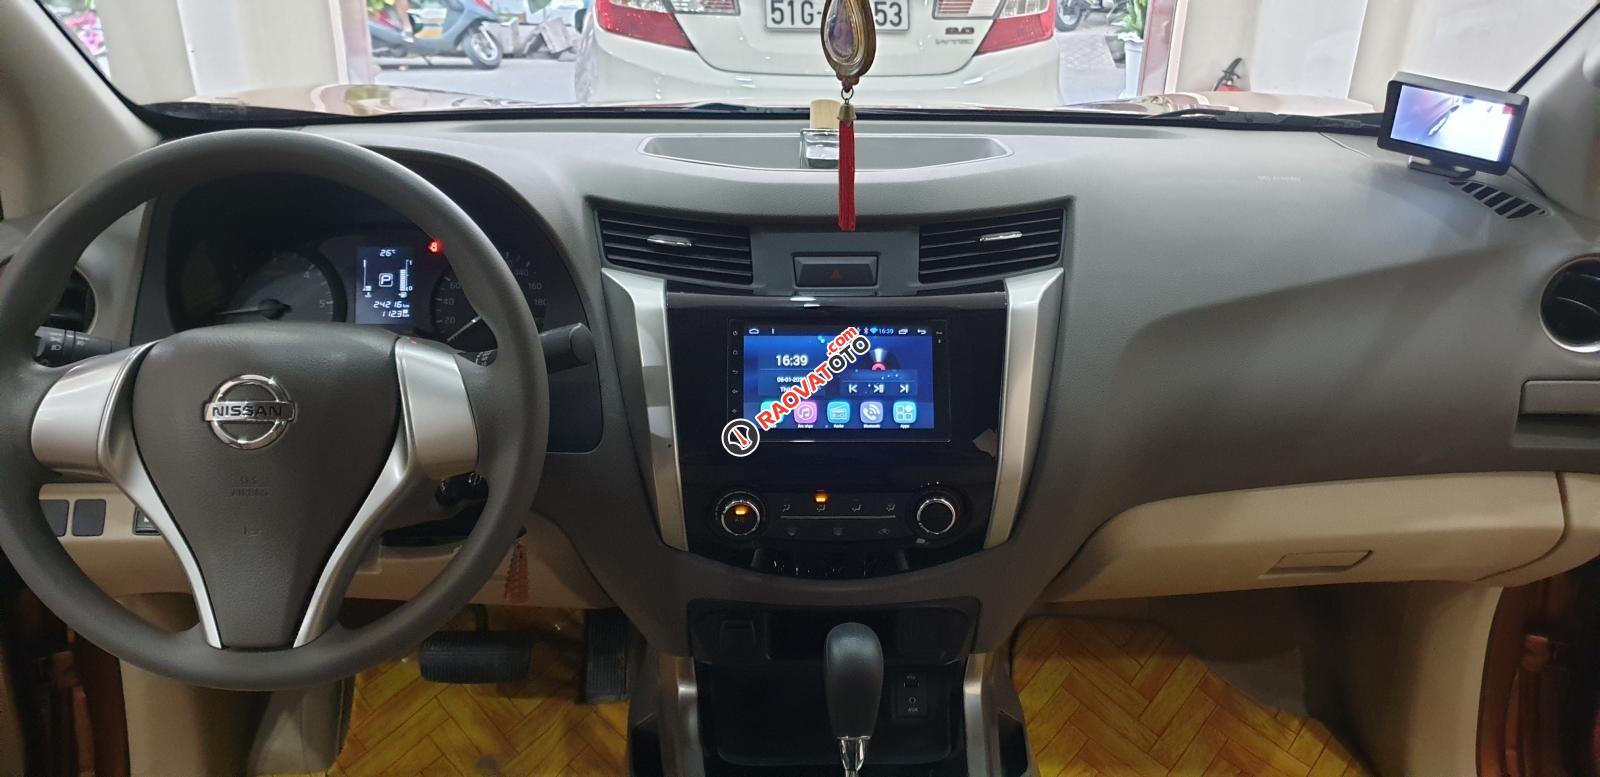 Bán Nissan Navara EL Premium R nhập khẩu dầu 2.5 số tự động, đk T3/2018 màu cam, đẹp mới 95%-8